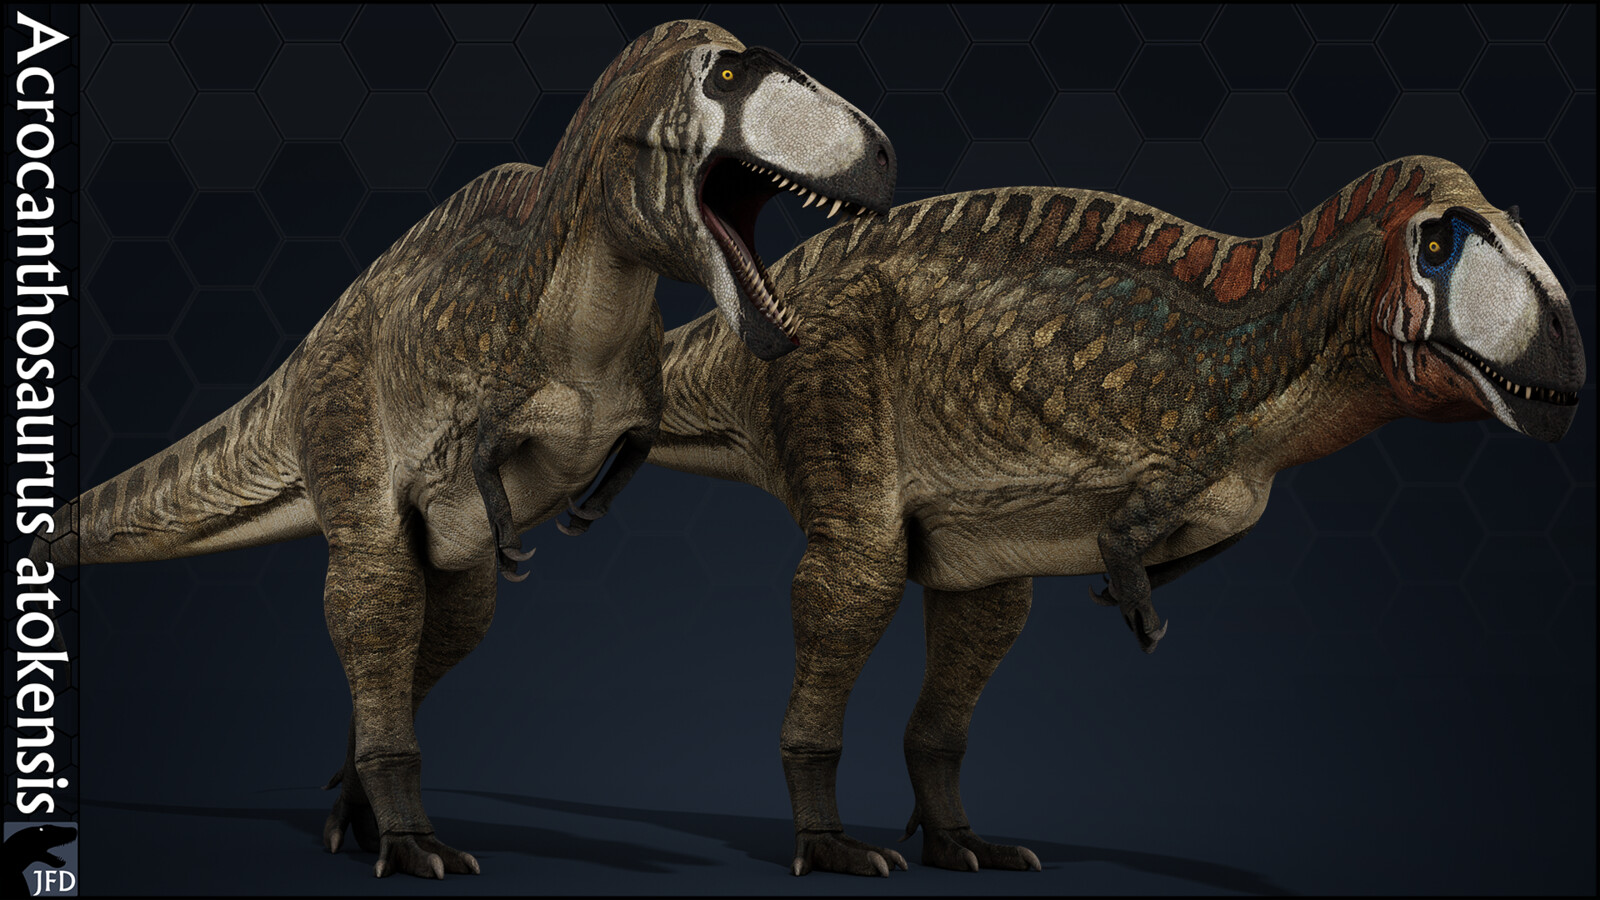 Acrocanthosaurus atokensis main textures.